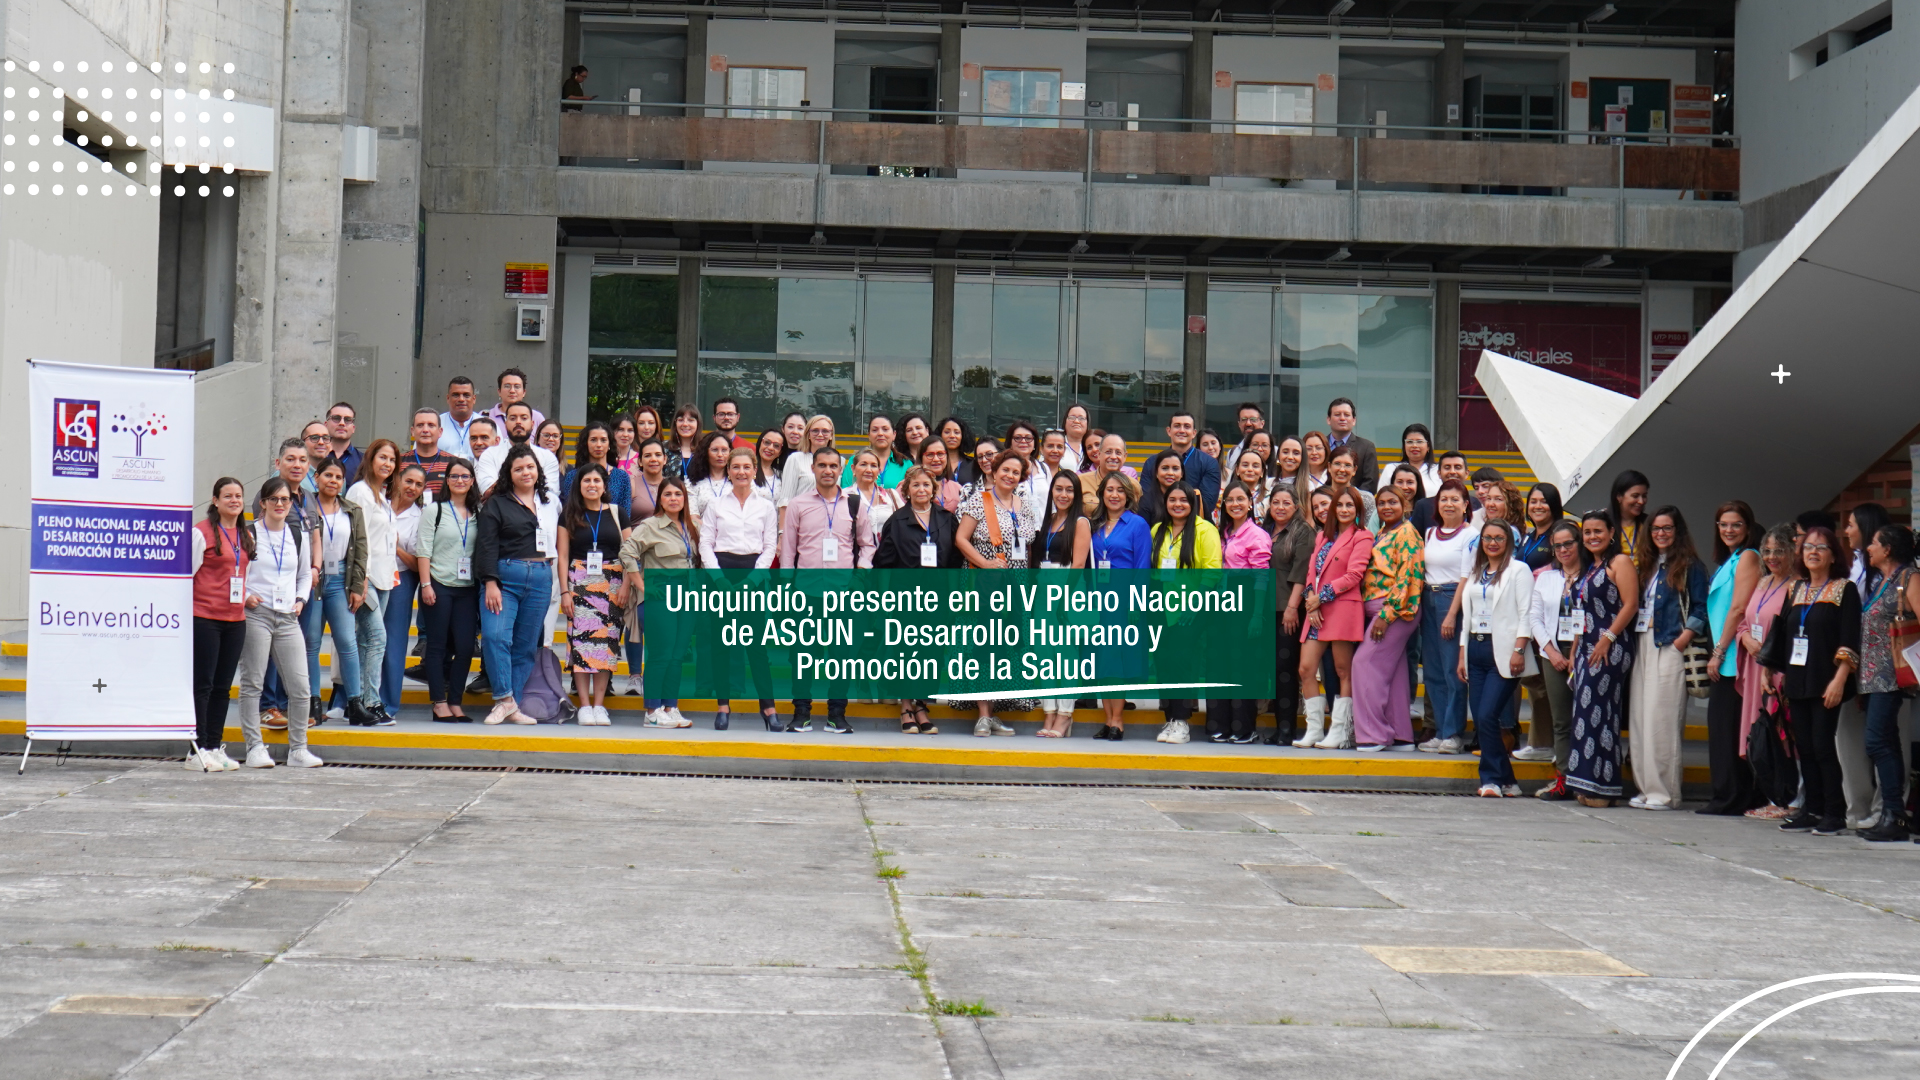 Uniquindío, presente en el V Pleno Nacional de ASCUN Desarrollo Humano y Promoción de la Salud